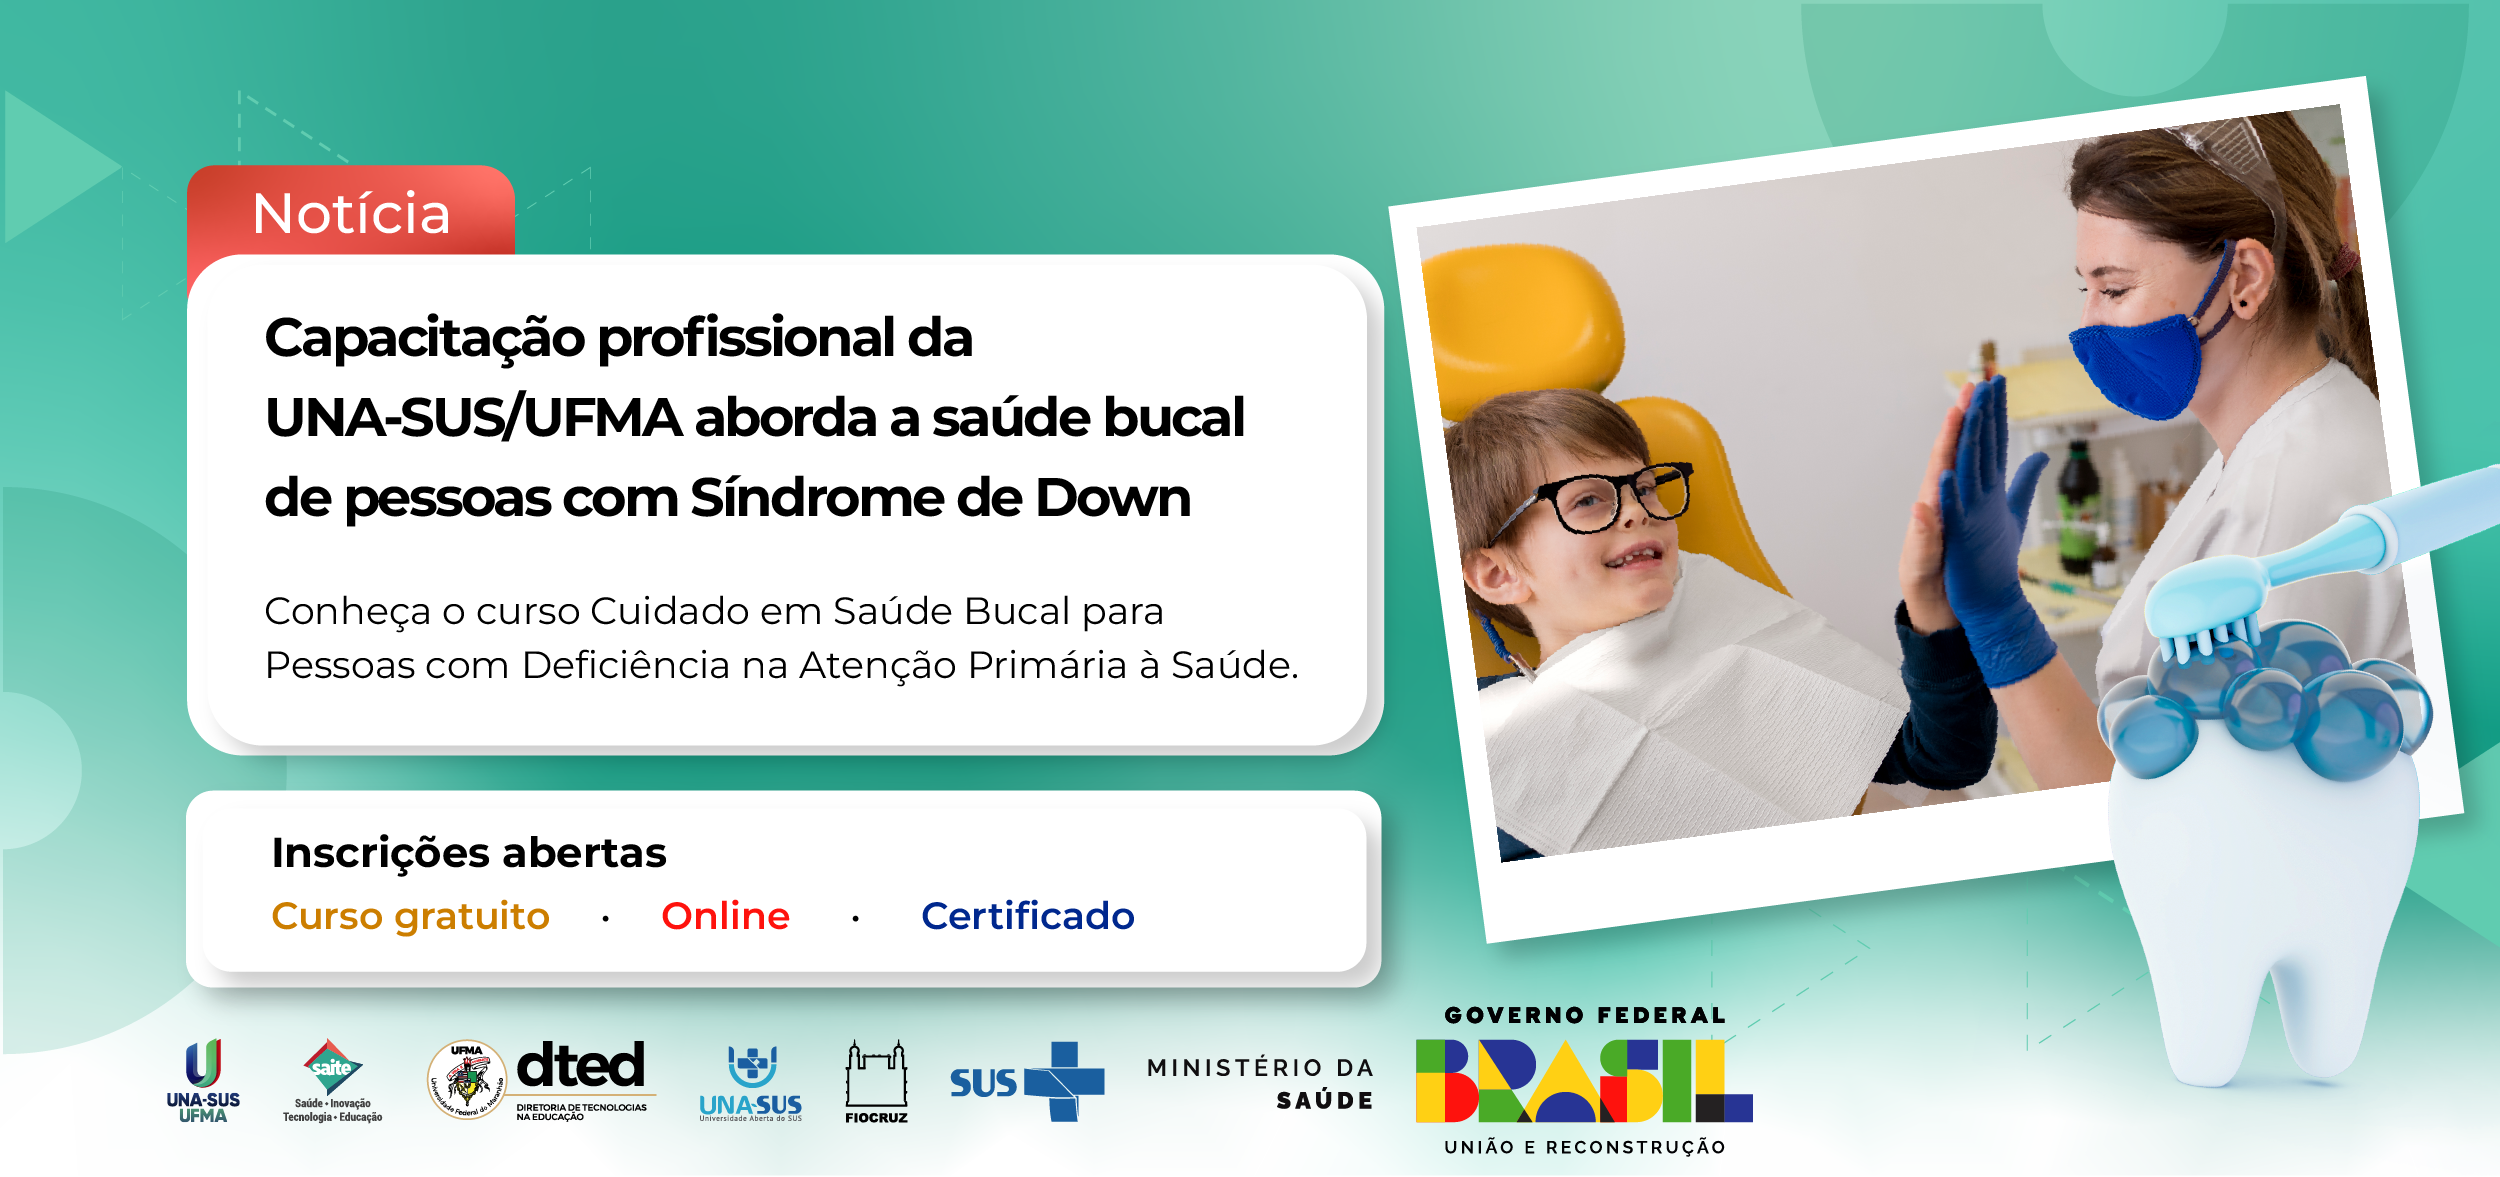 Capacitação profissional online e gratuita aborda a saúde bucal de pessoas com Síndrome de Down